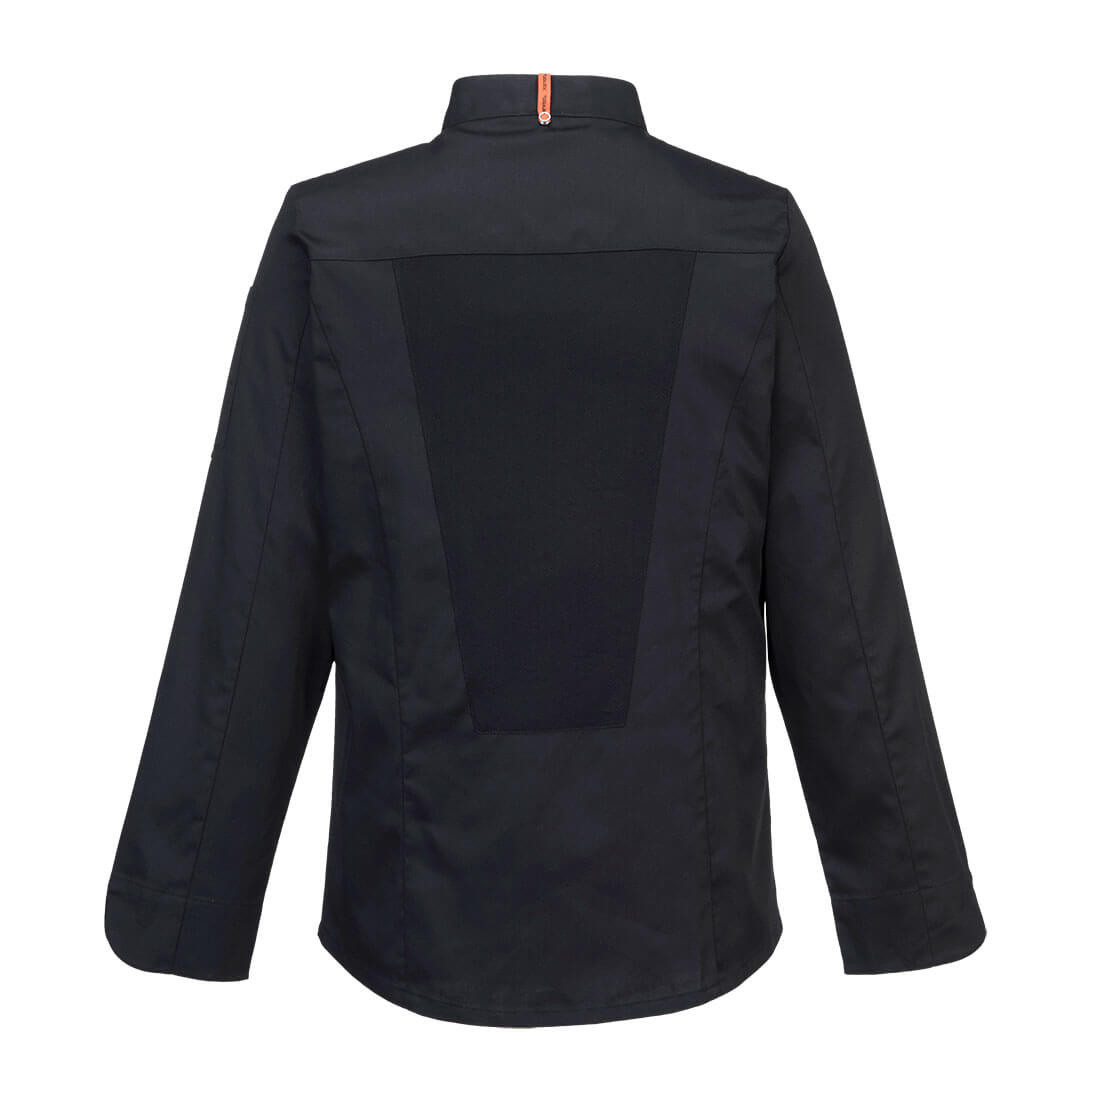 Casacca elastica Mesh Air Pro m/l - Abbigliamento di protezione